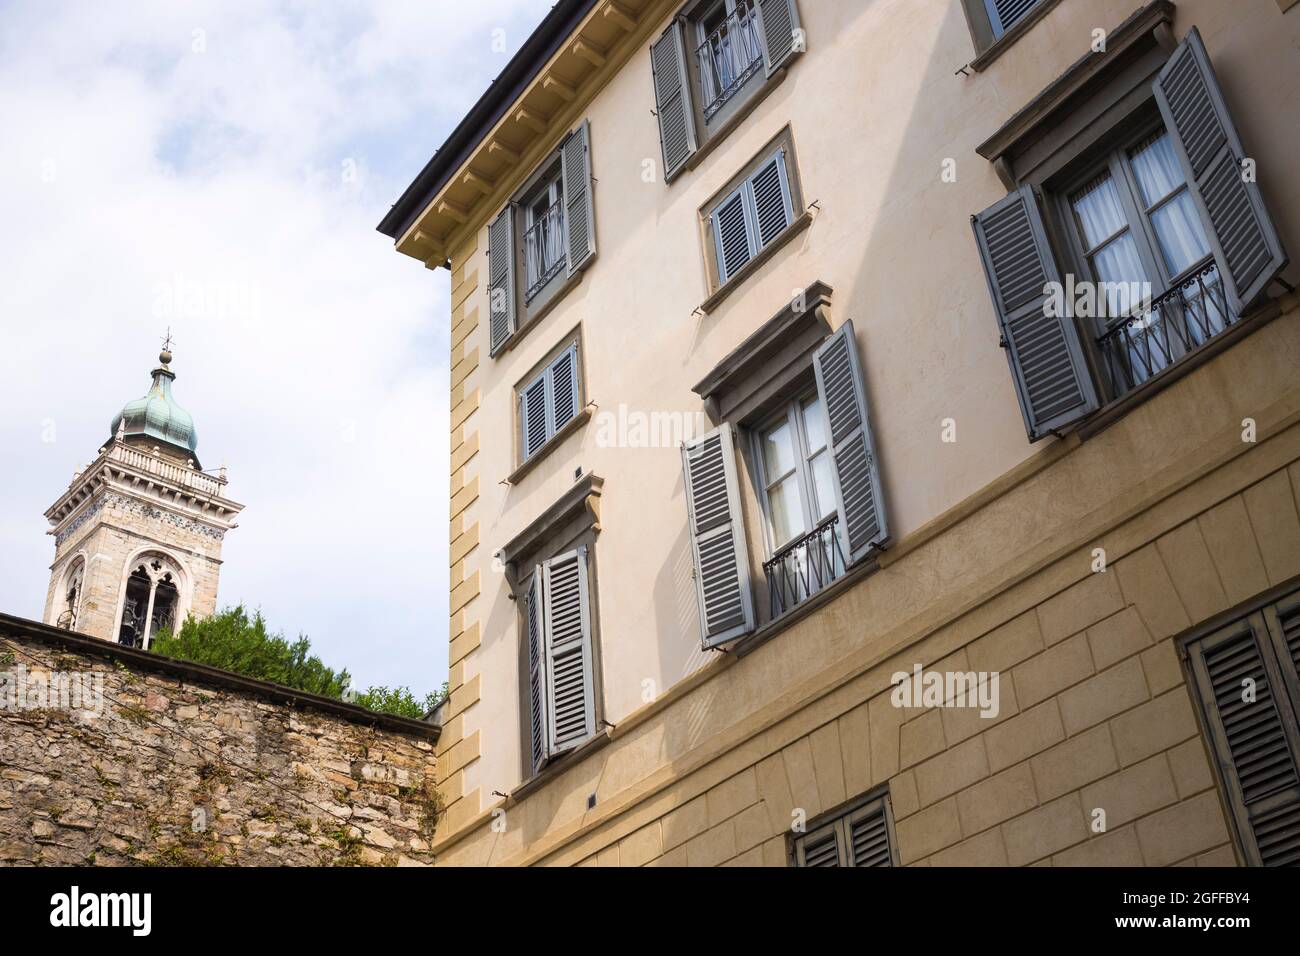 Città alta, Bergamo, Italia: Tipica scena stradale; palazzi con finestre a sarciaidea; scorcio della torre di S. Maria maggiore. Foto Stock